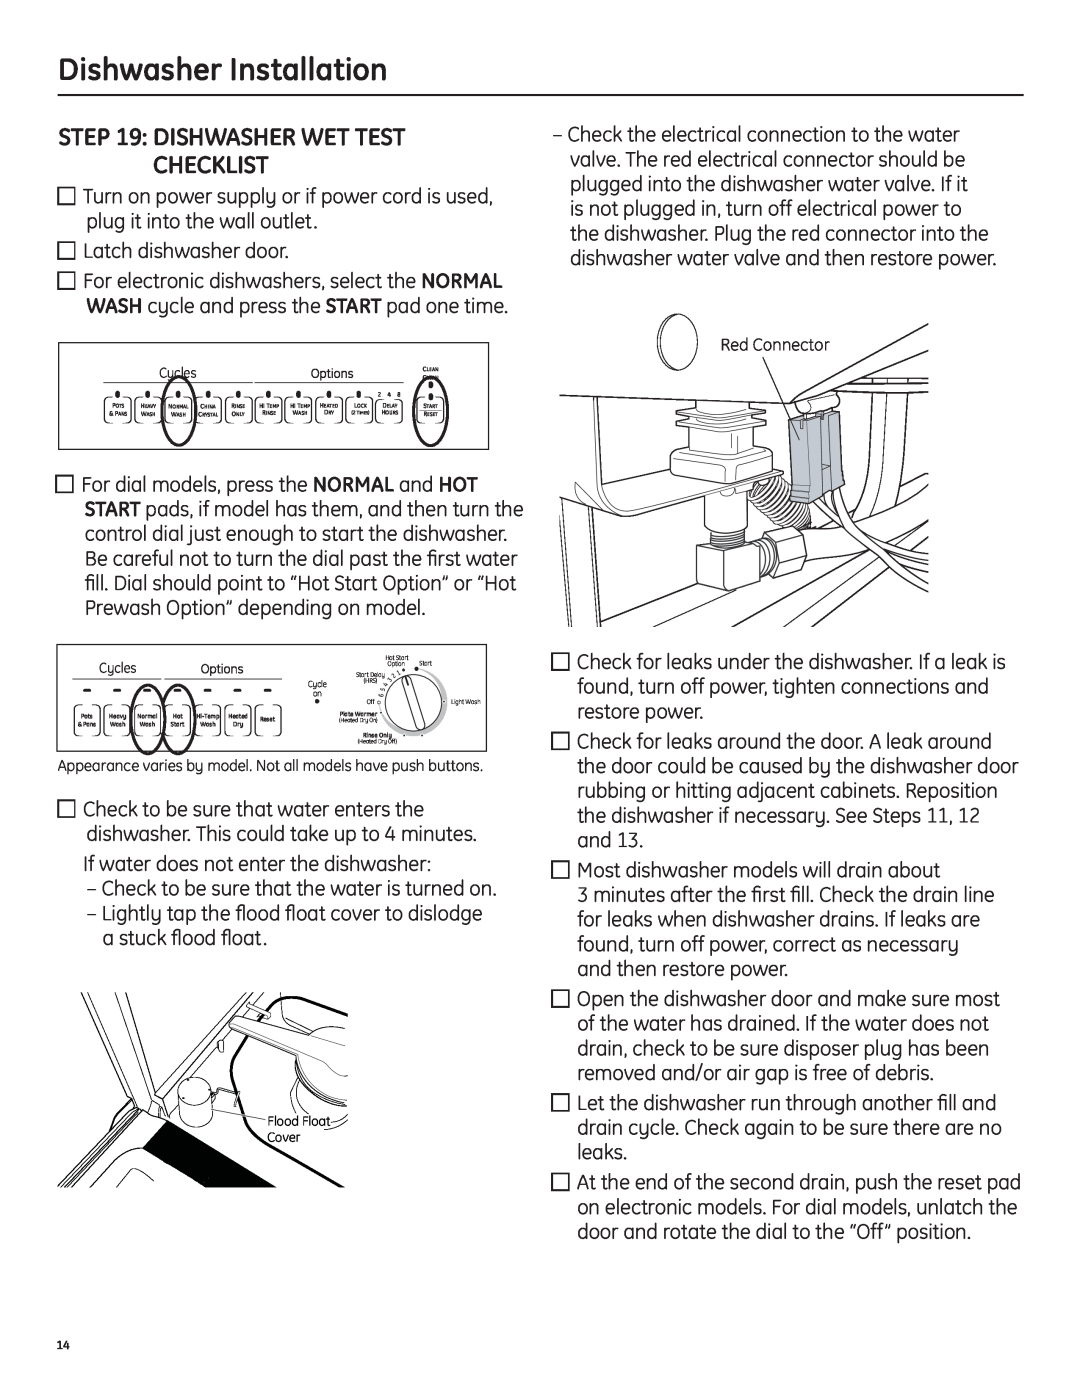 GE 206C1559P195 installation instructions dishwasher wet test checklist, Dishwasher Installation 